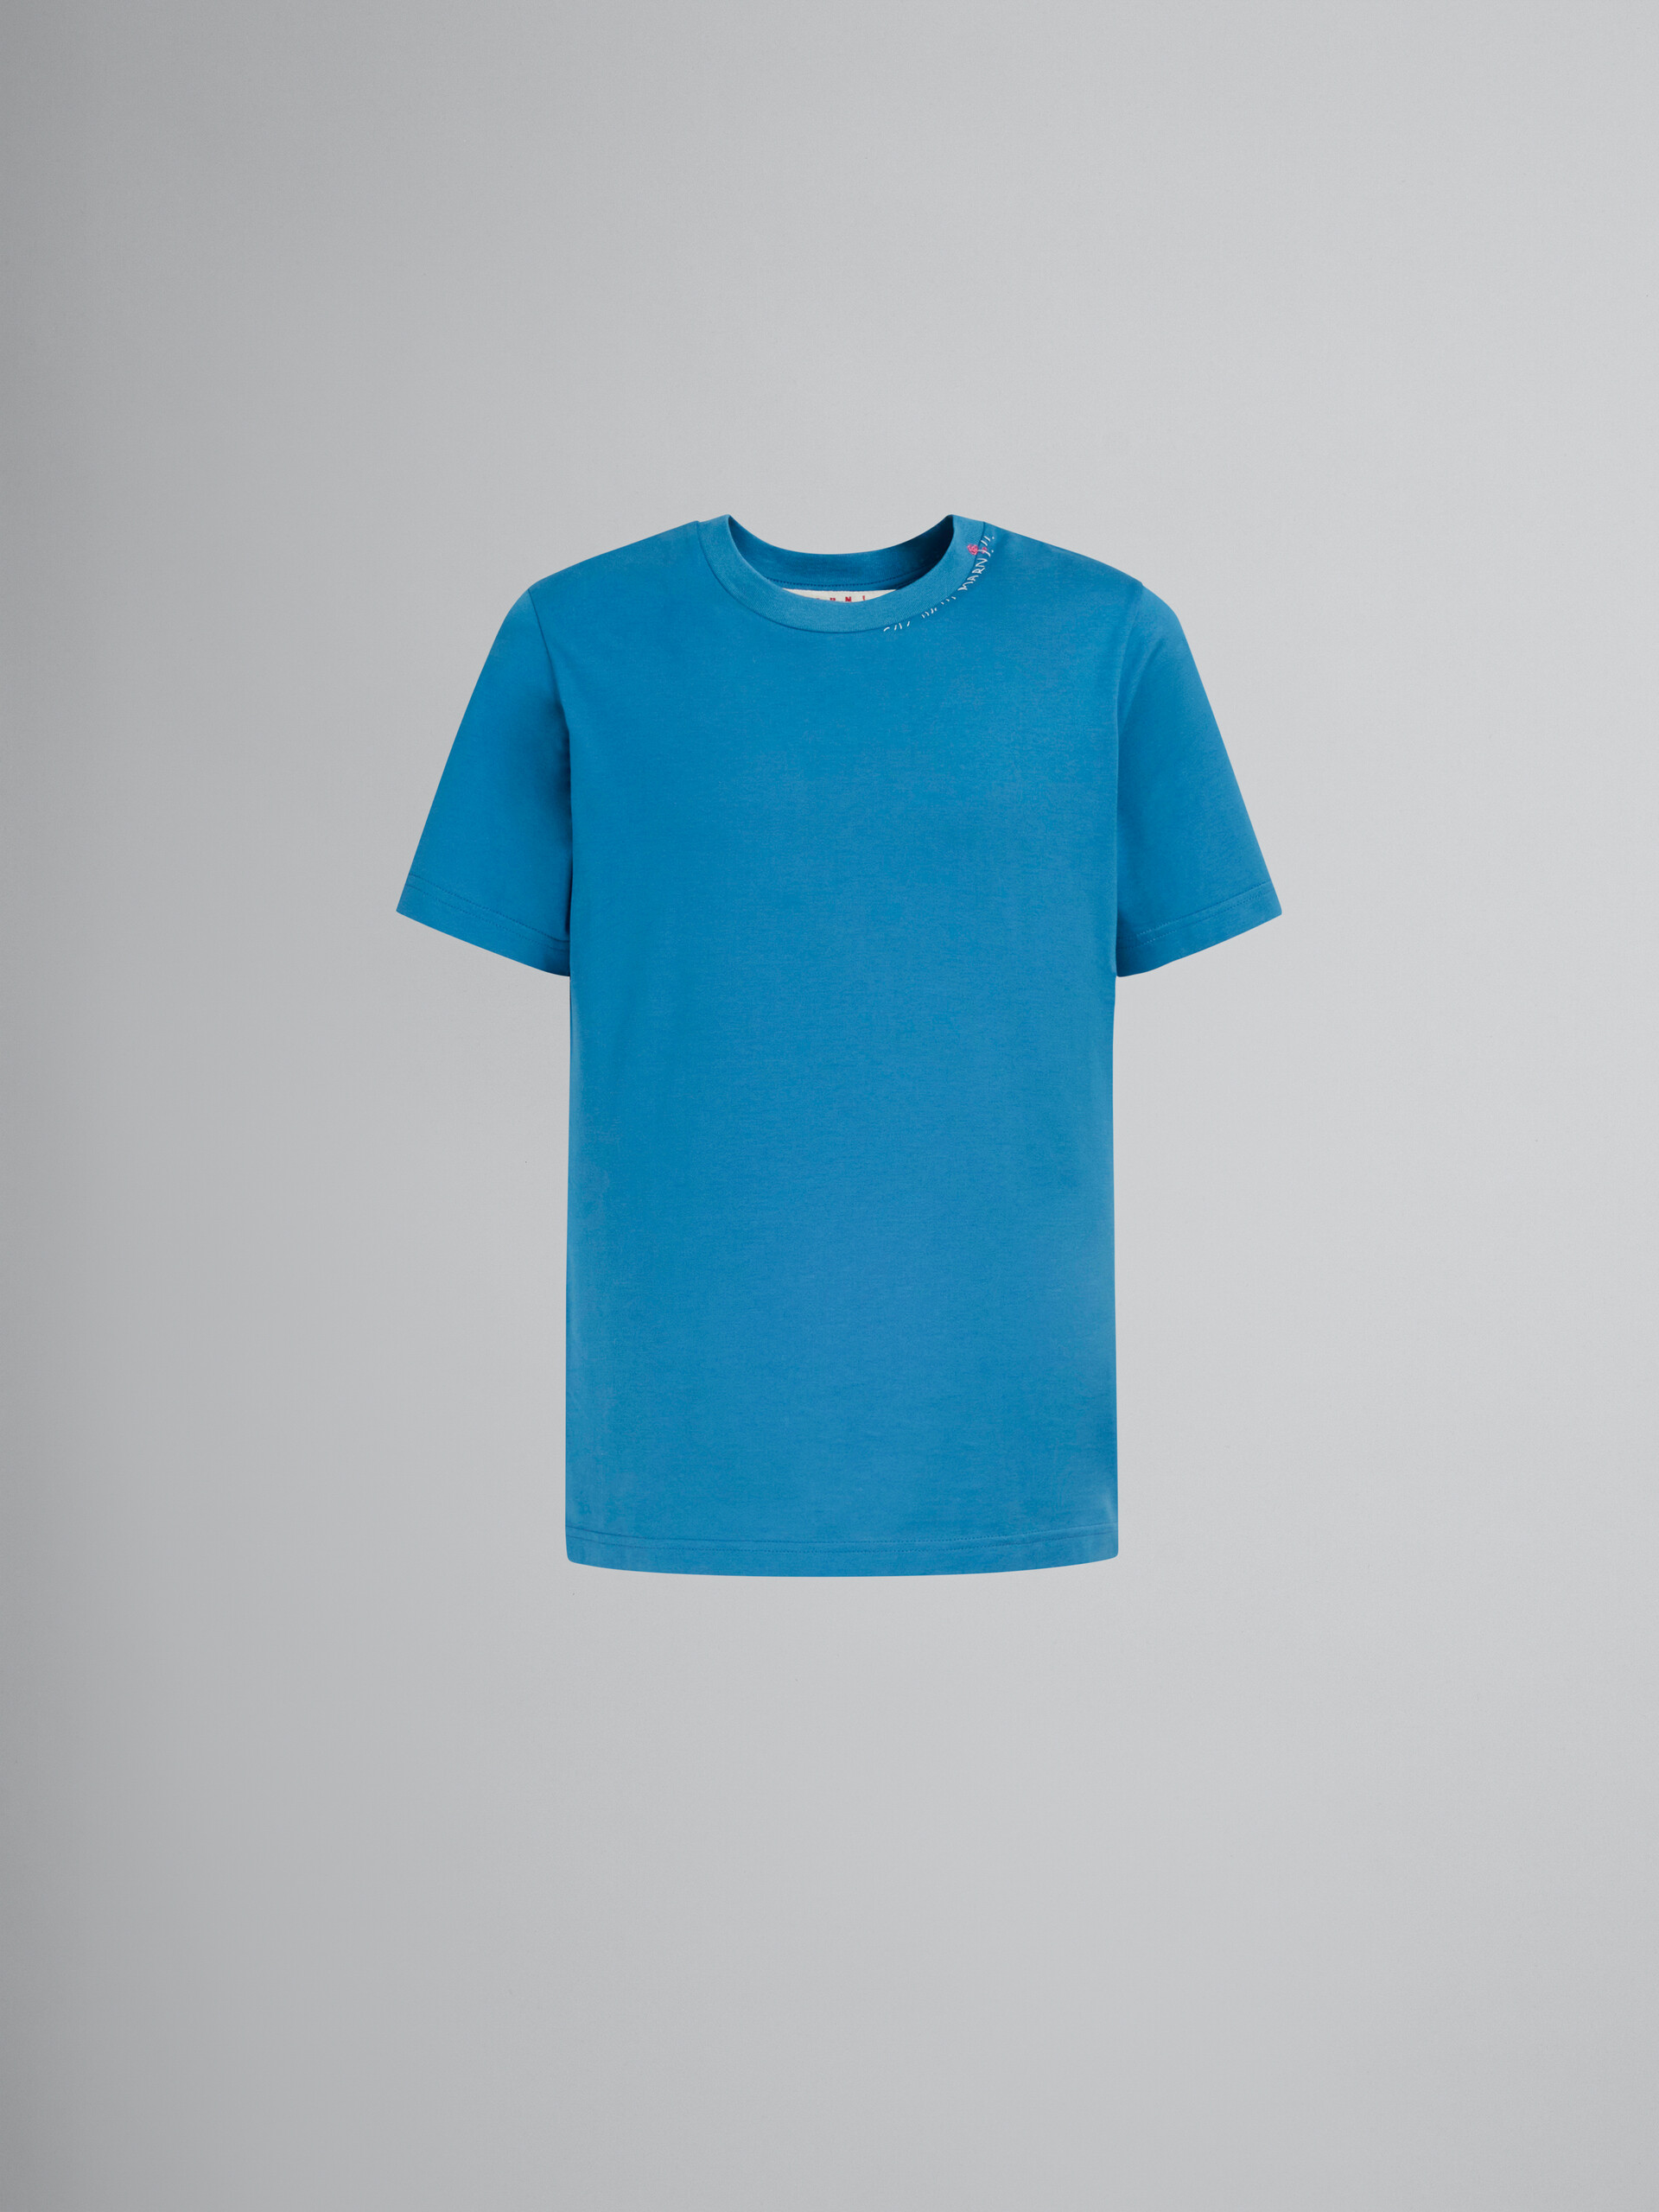 Camiseta de algodón azul con estampado de flores en la parte trasera - Camisetas - Image 1